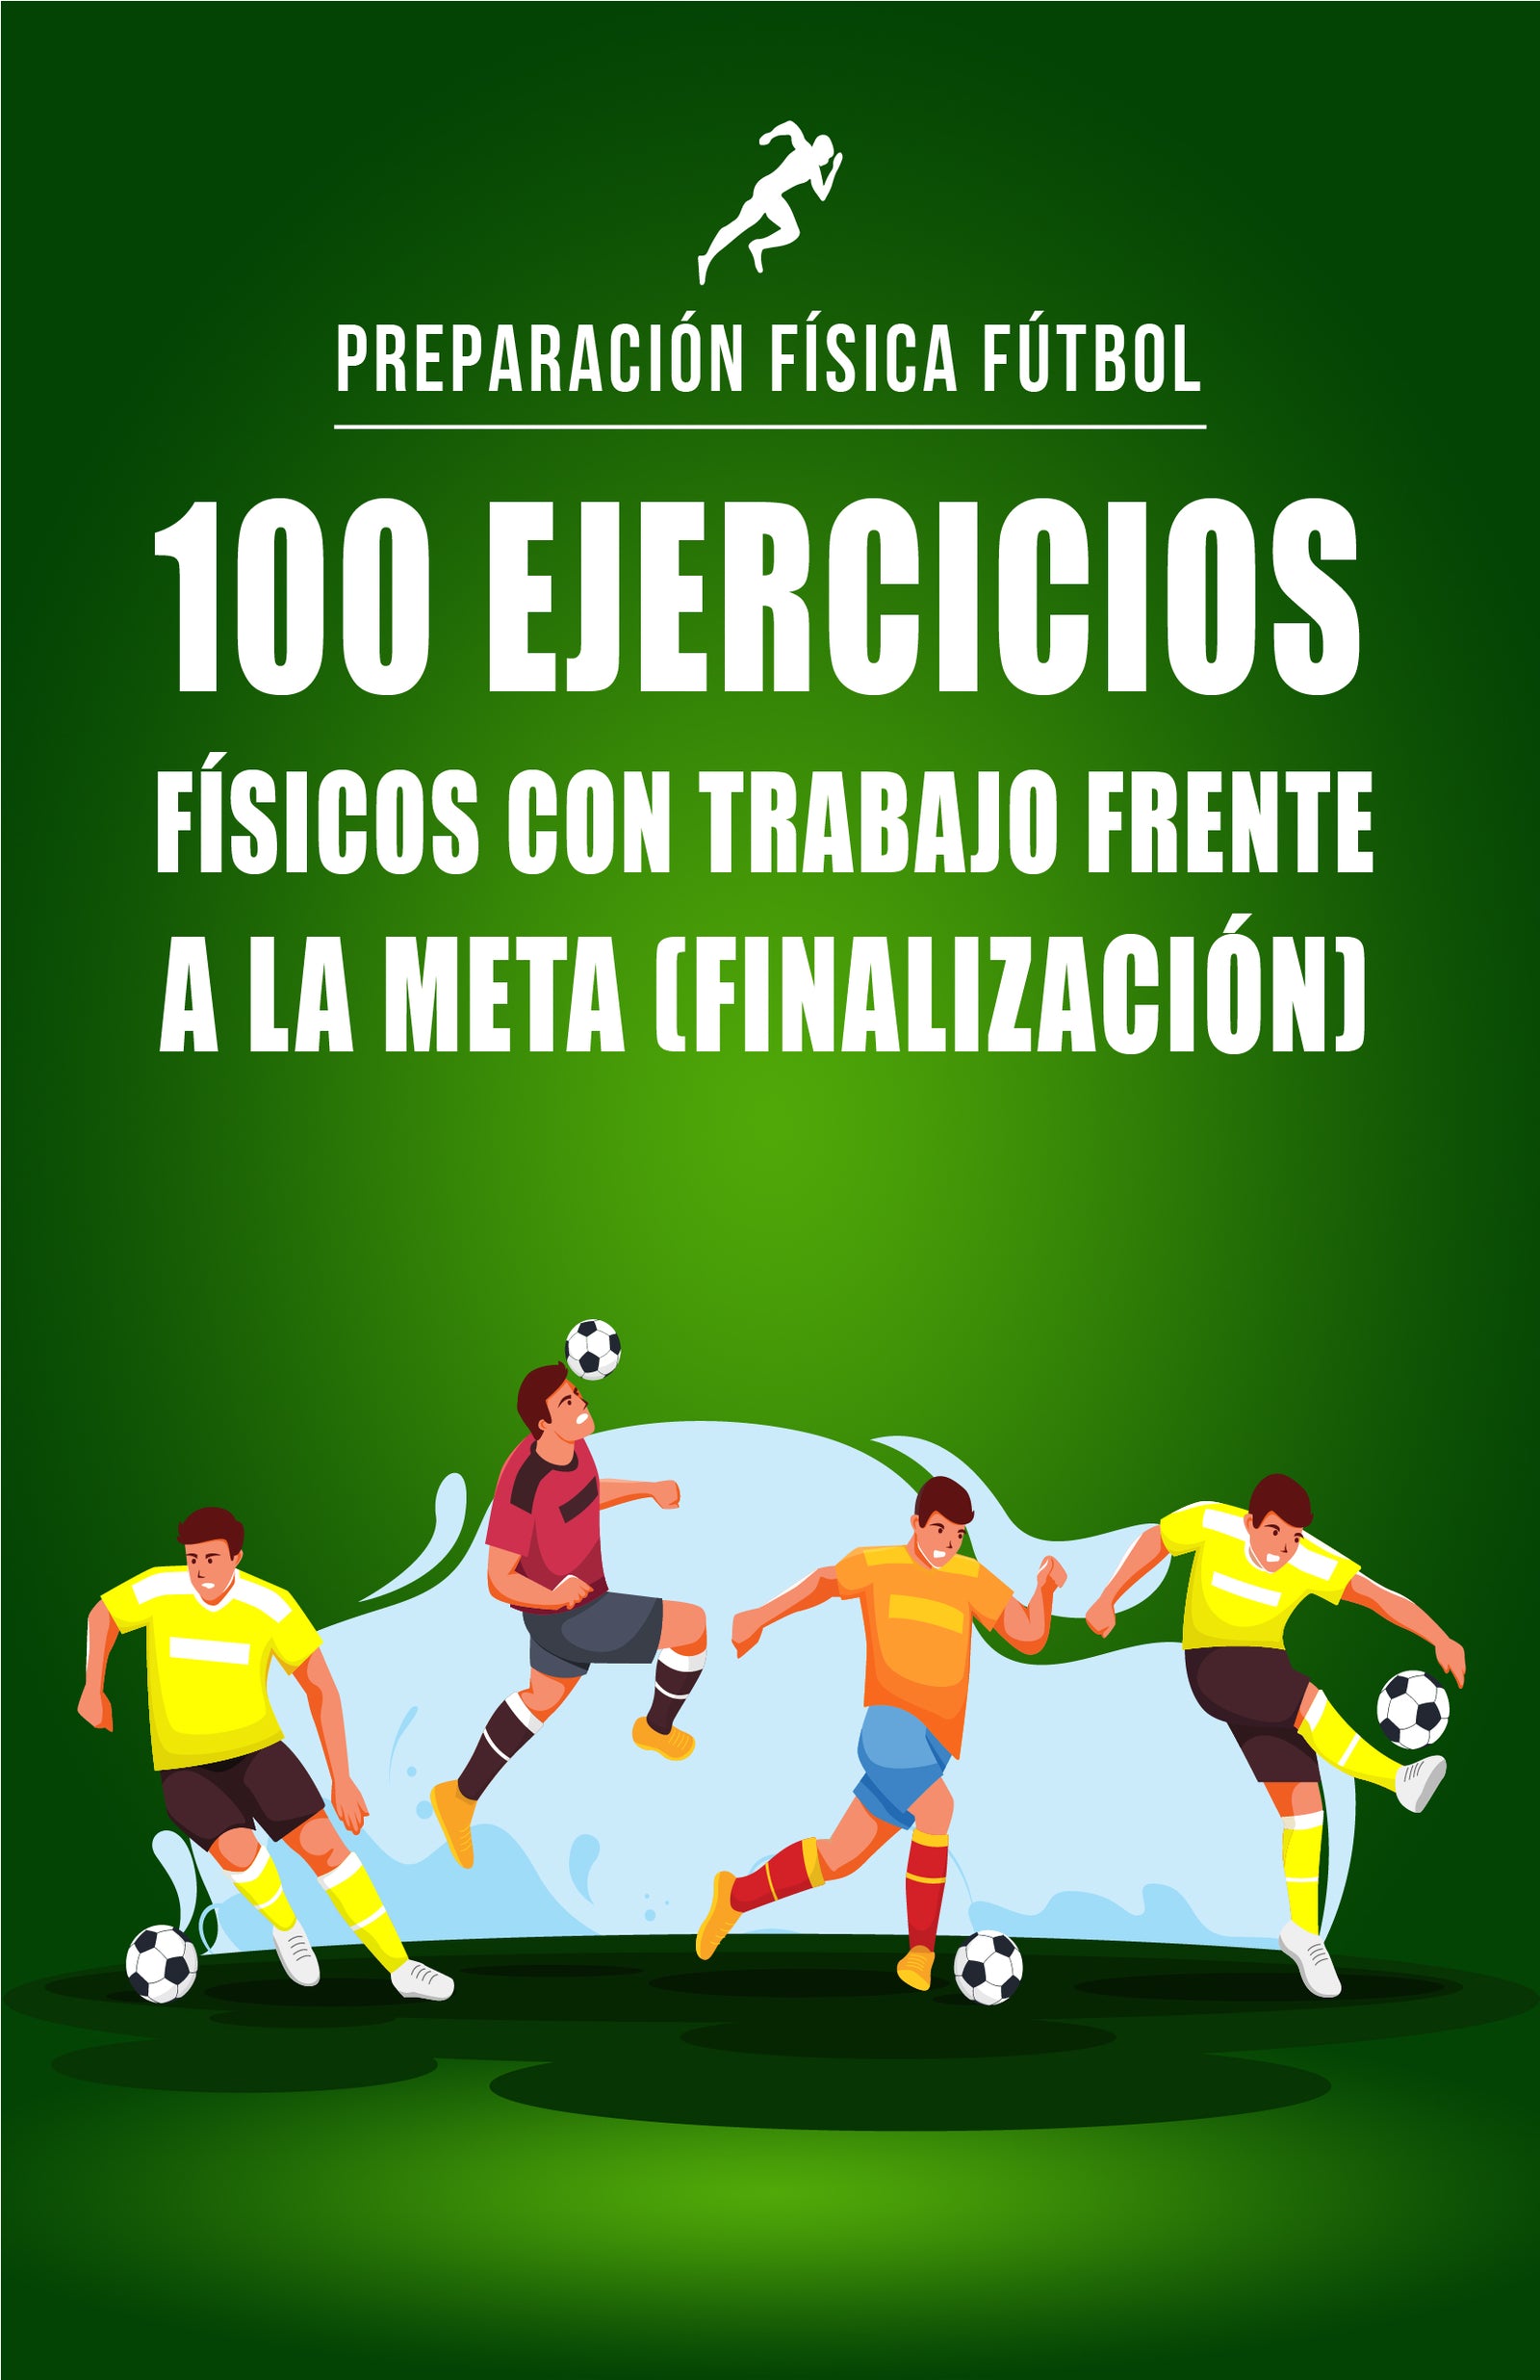 Habilidades Básicas de Fútbol para Niños: 150 ejercicios, tácticas y  estrategias de entrenamiento de fútbol para mejorar las habilidades y la  capacidad de análisis de los niños (Paperback) 